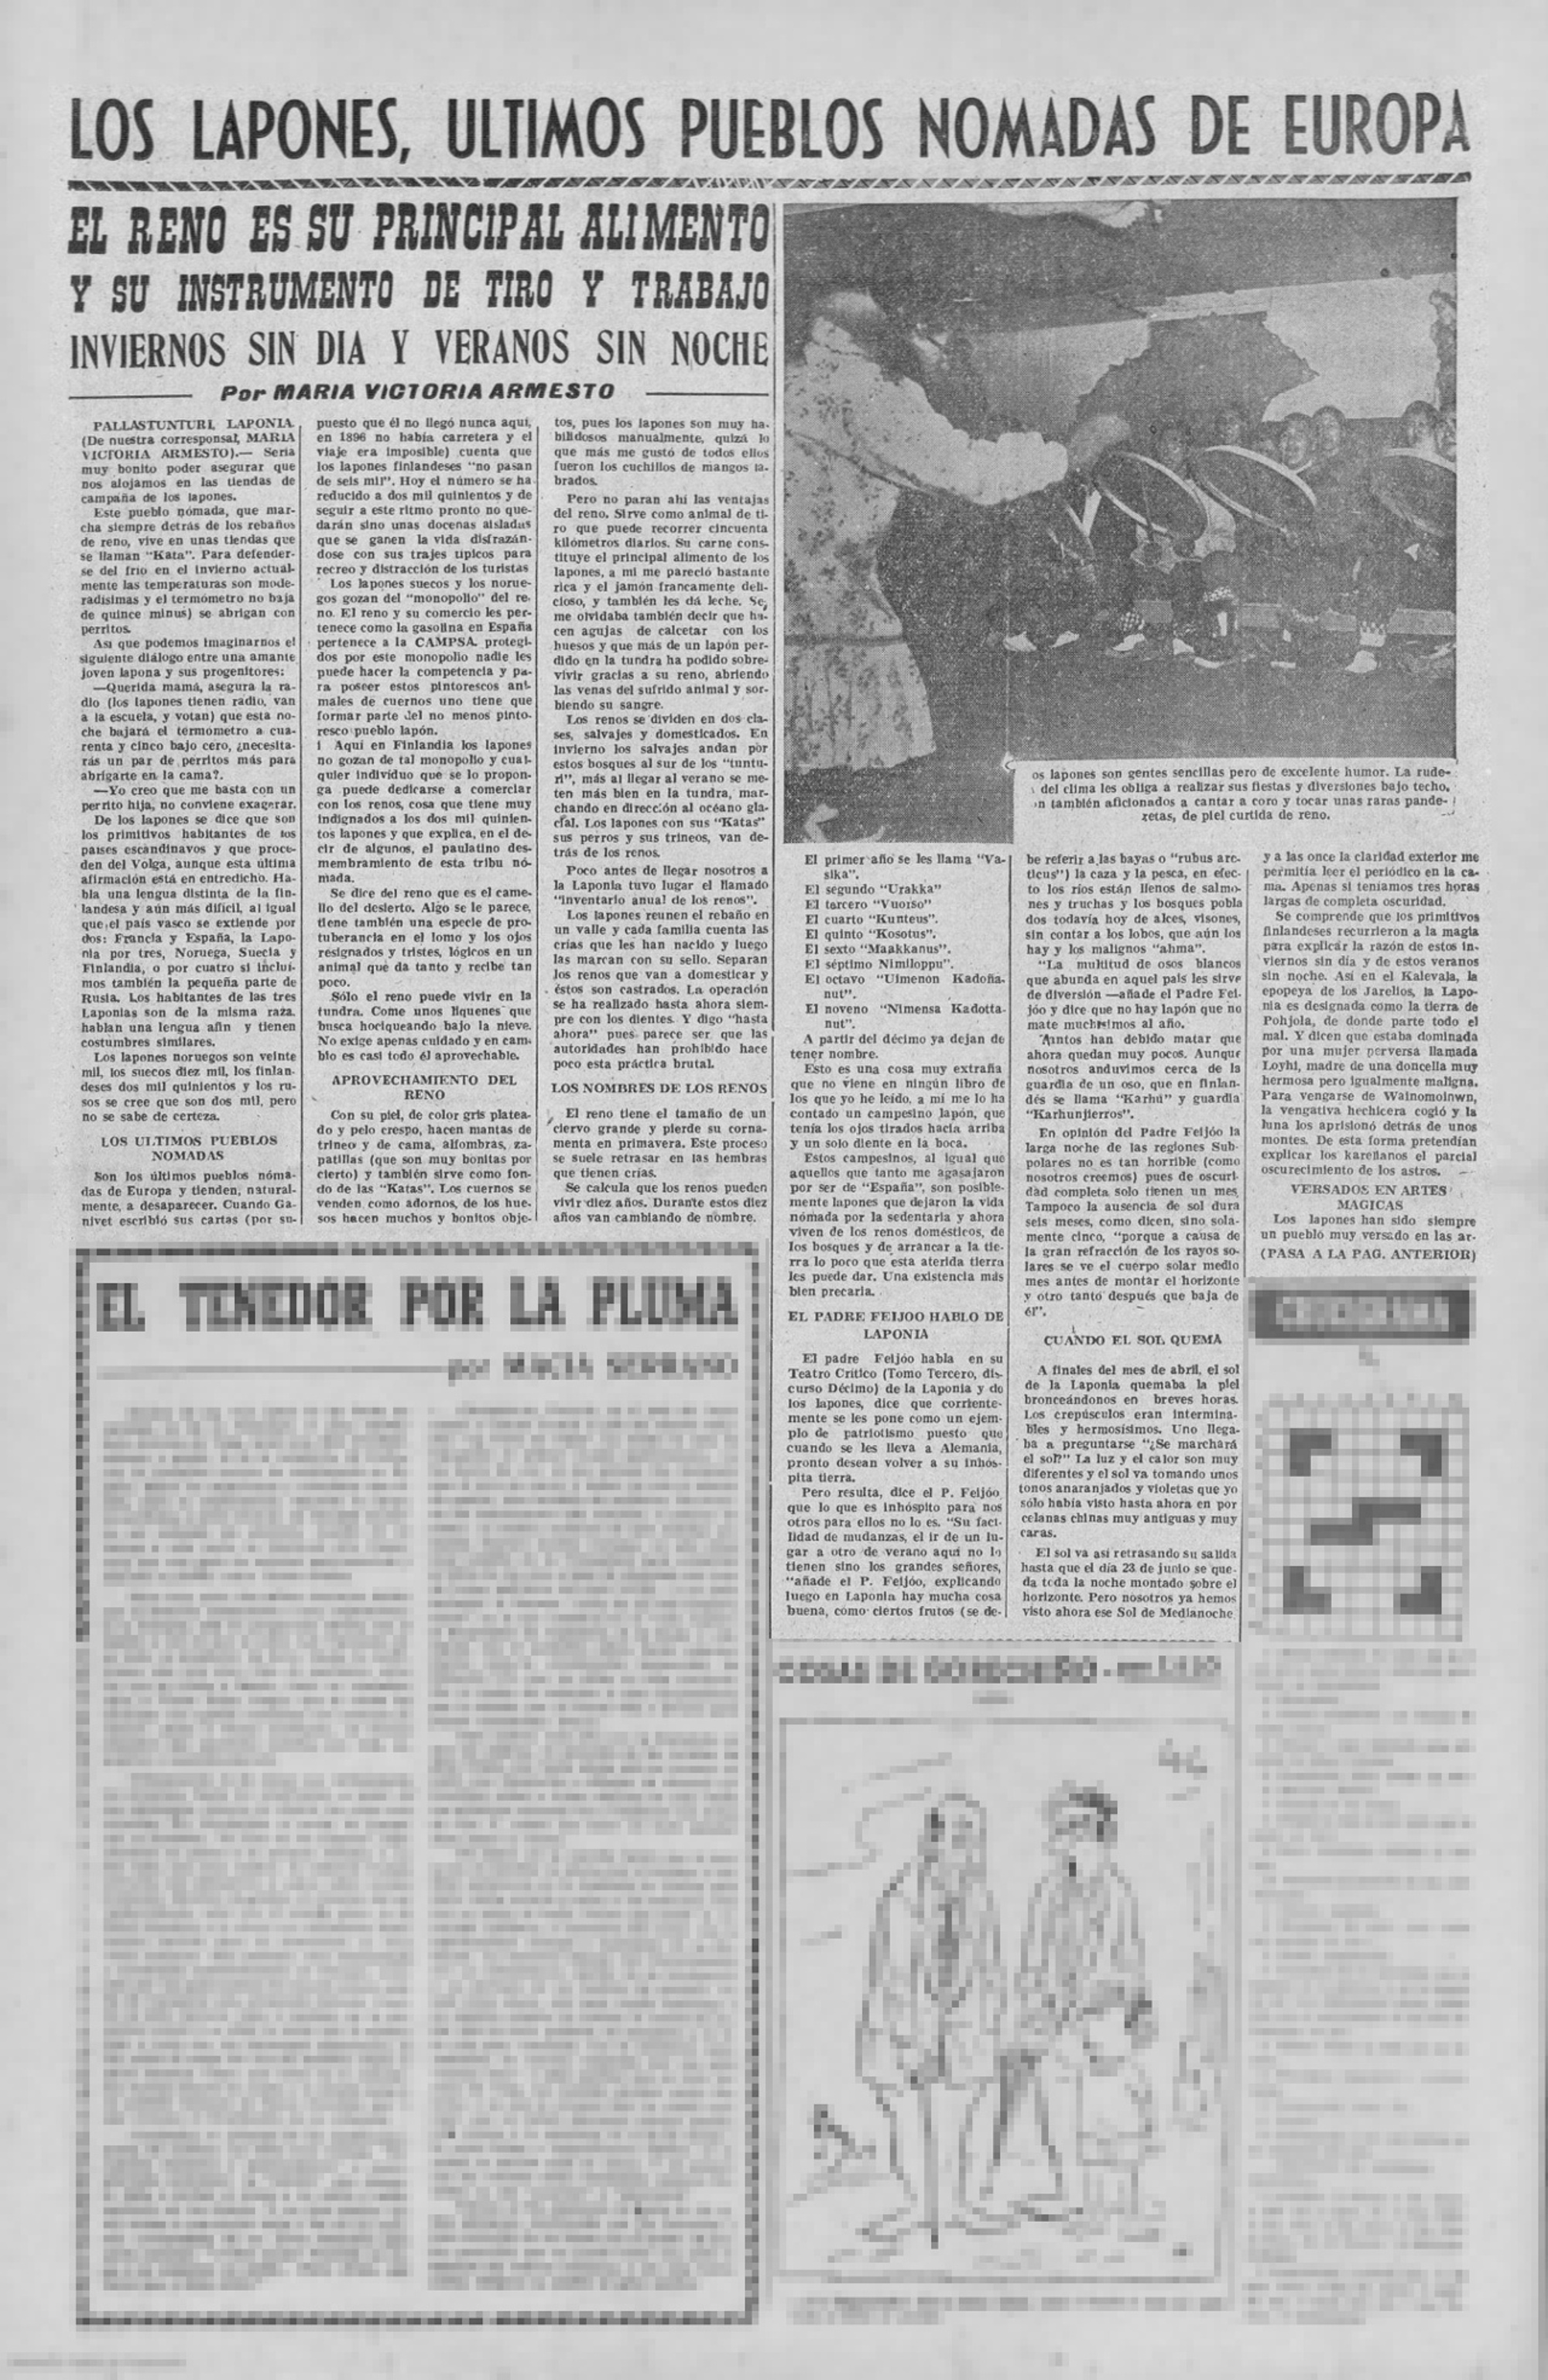 El Pueblo Gallego 1959 - Lapones